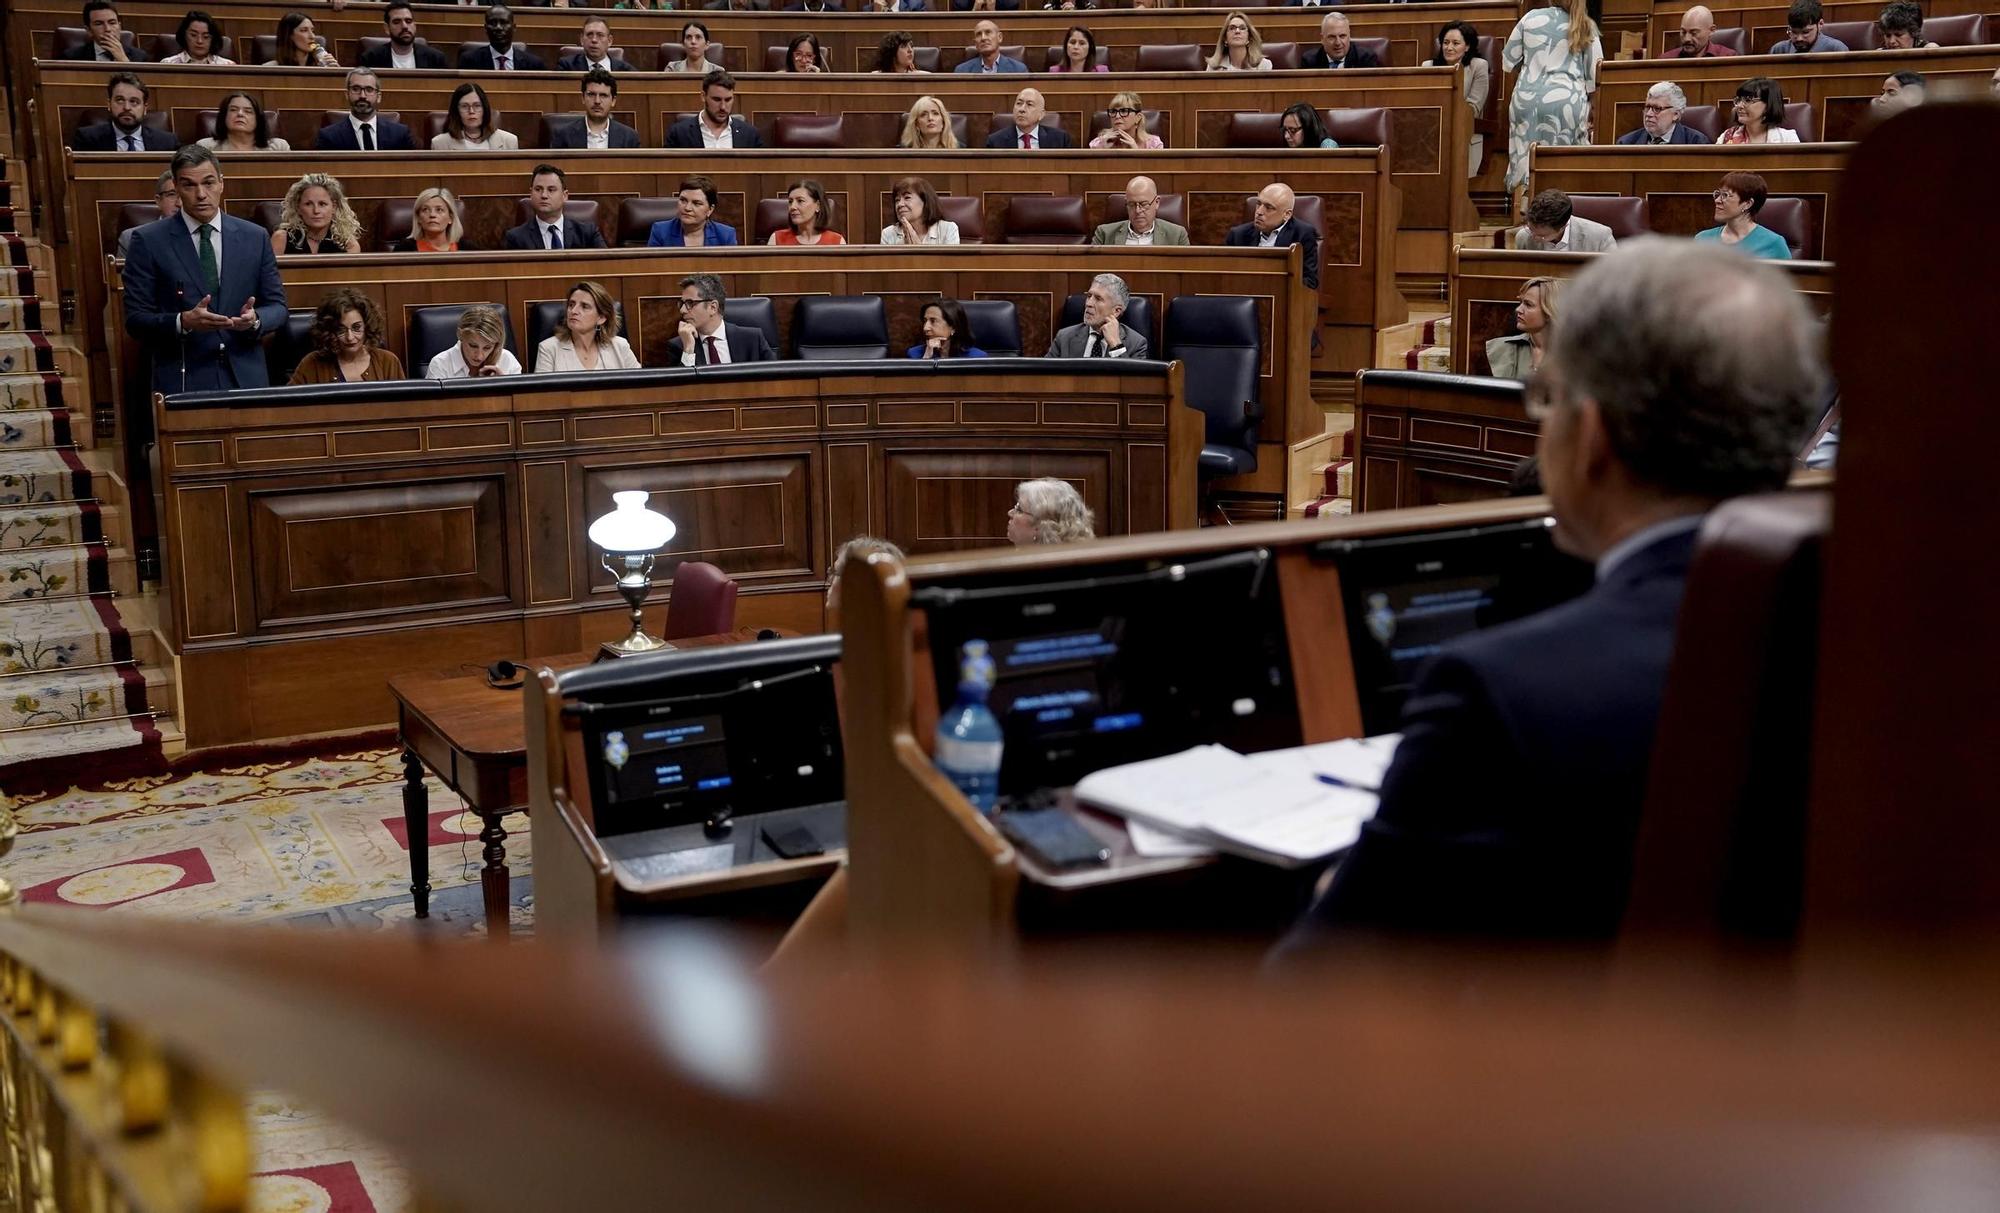 Sesión de control en el Congreso de los Diputados, en imágenes